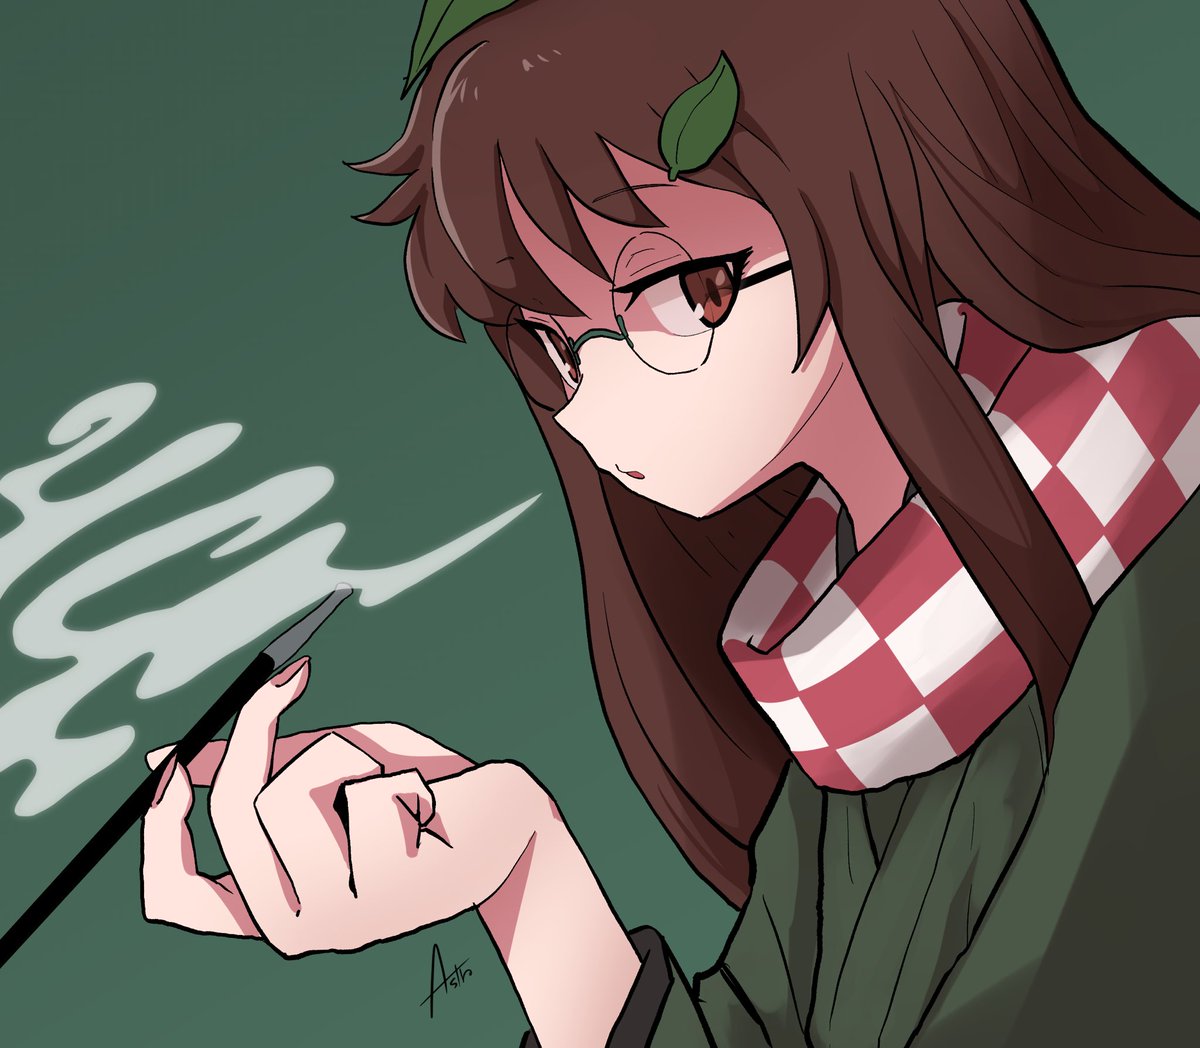 futatsuiwa mamizou 1girl brown hair scarf glasses brown eyes smoking pipe leaf  illustration images